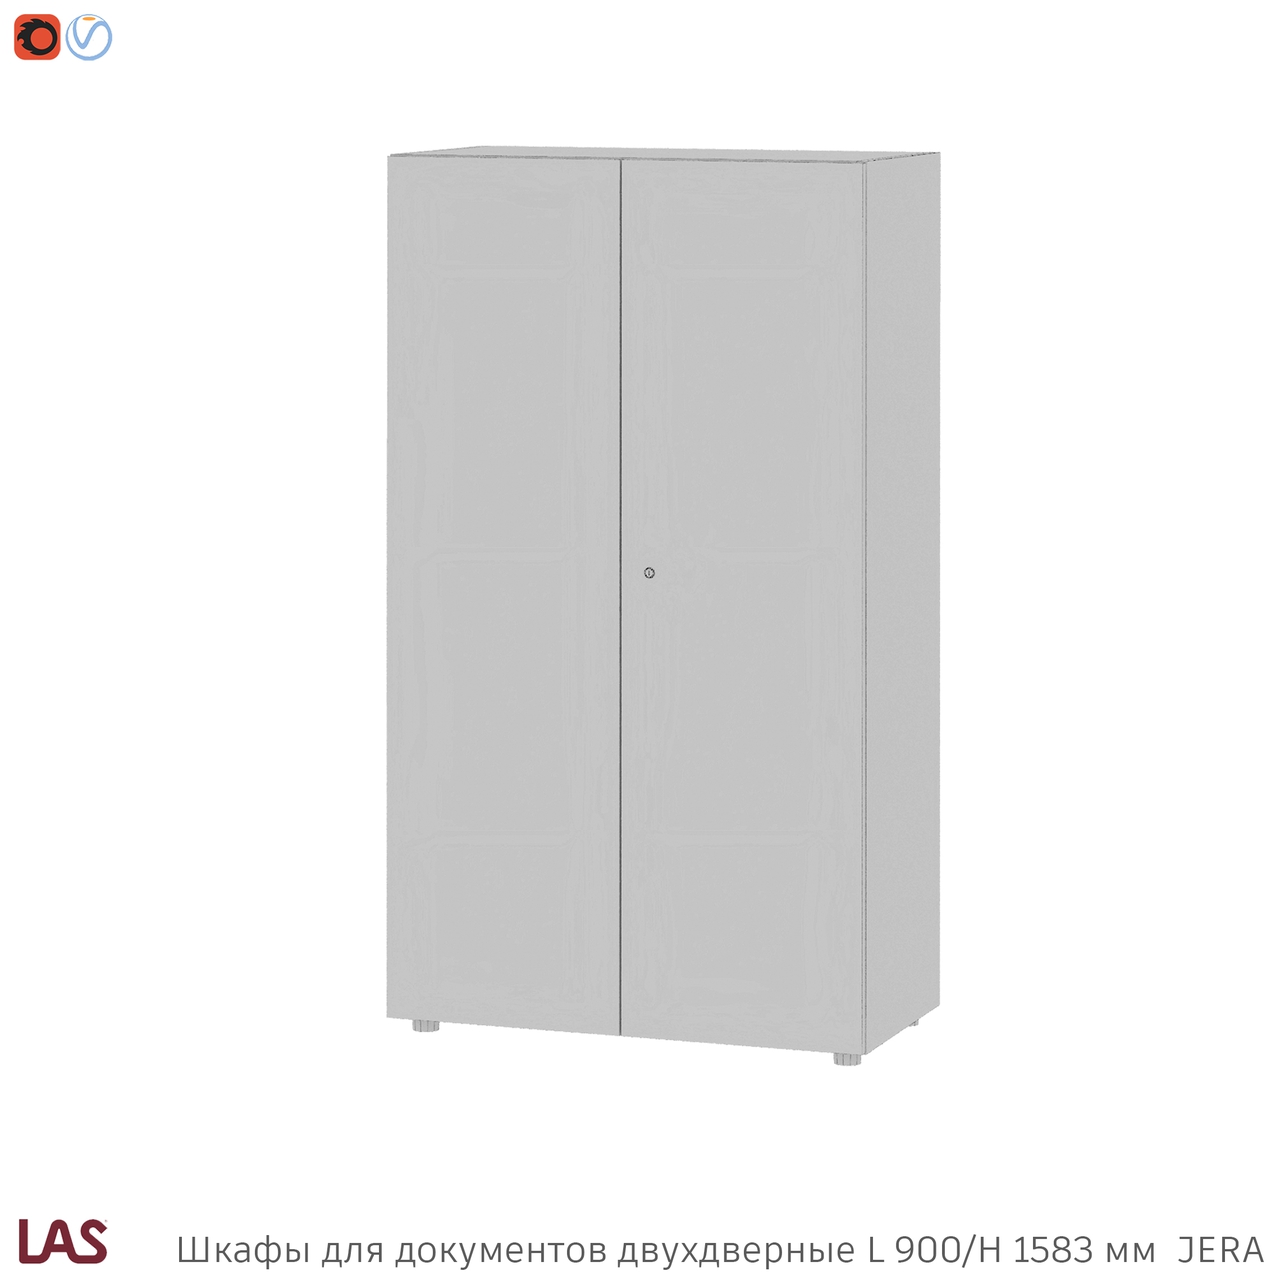 Превью G 3D-модели офисных шкафов с двумя дверьми LAS Jera 159990